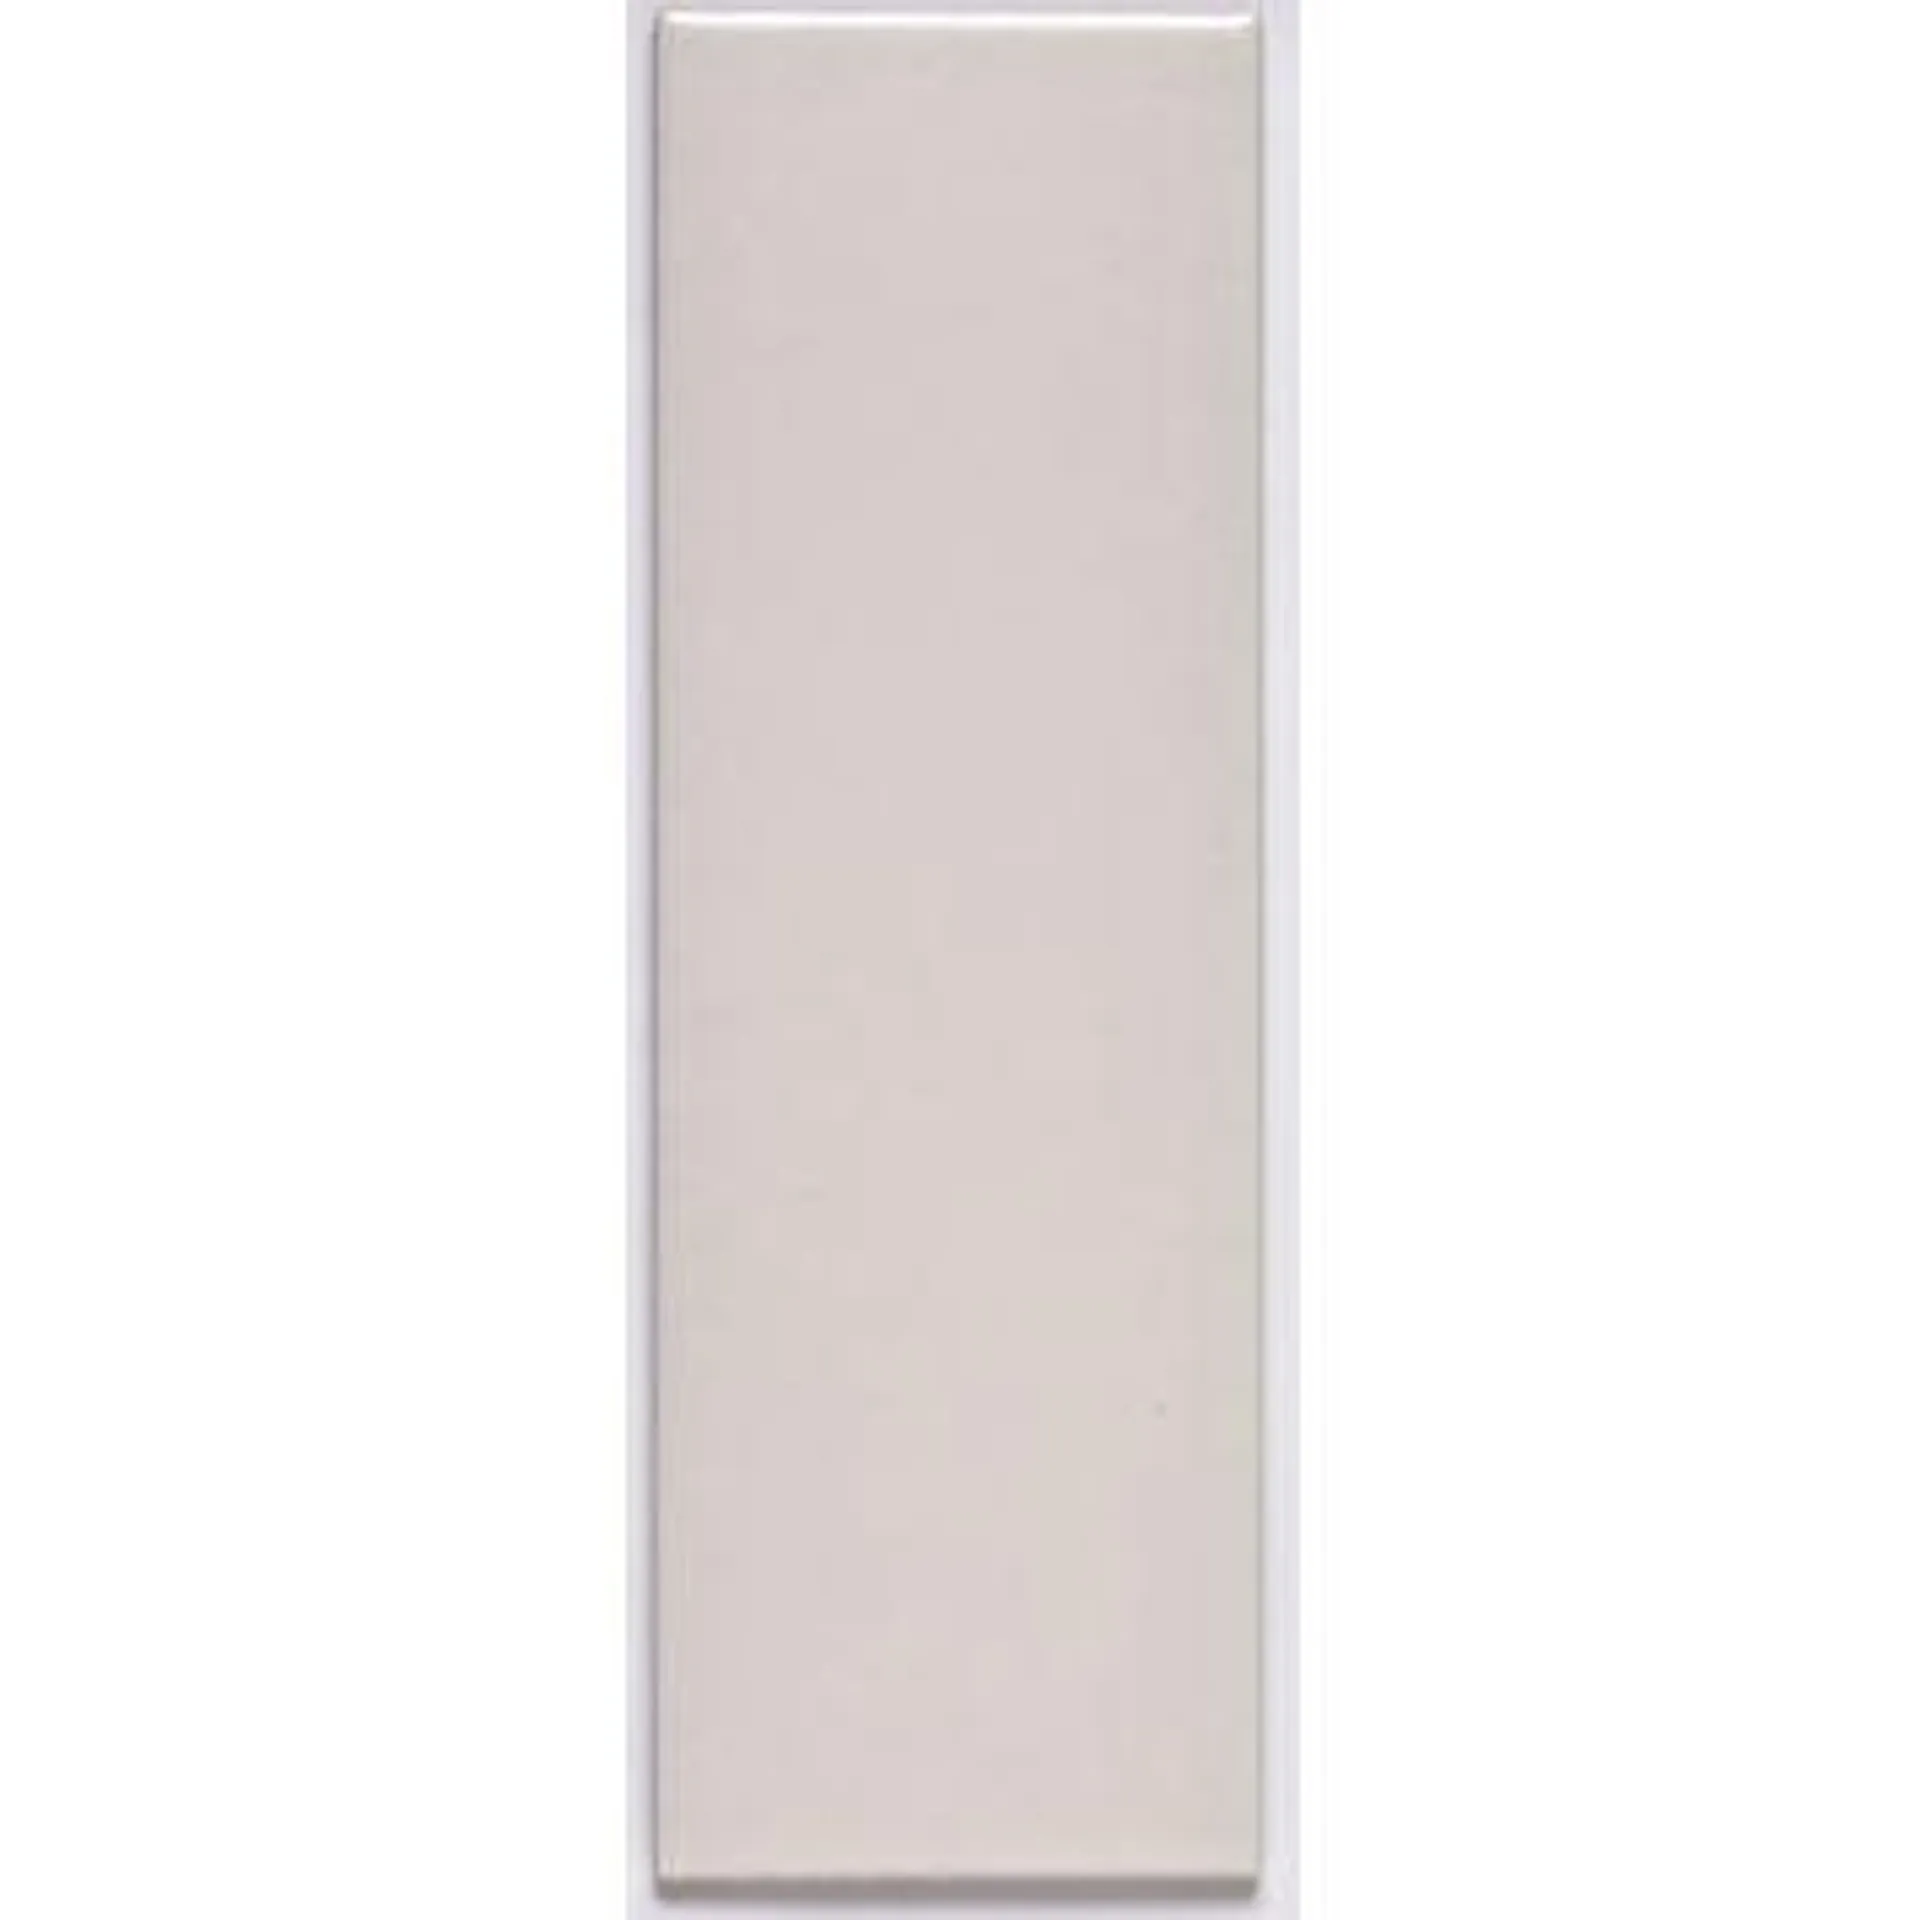 Gulv-/vægflise Saten hvid 9,7x29,7 cm 0,68 m²